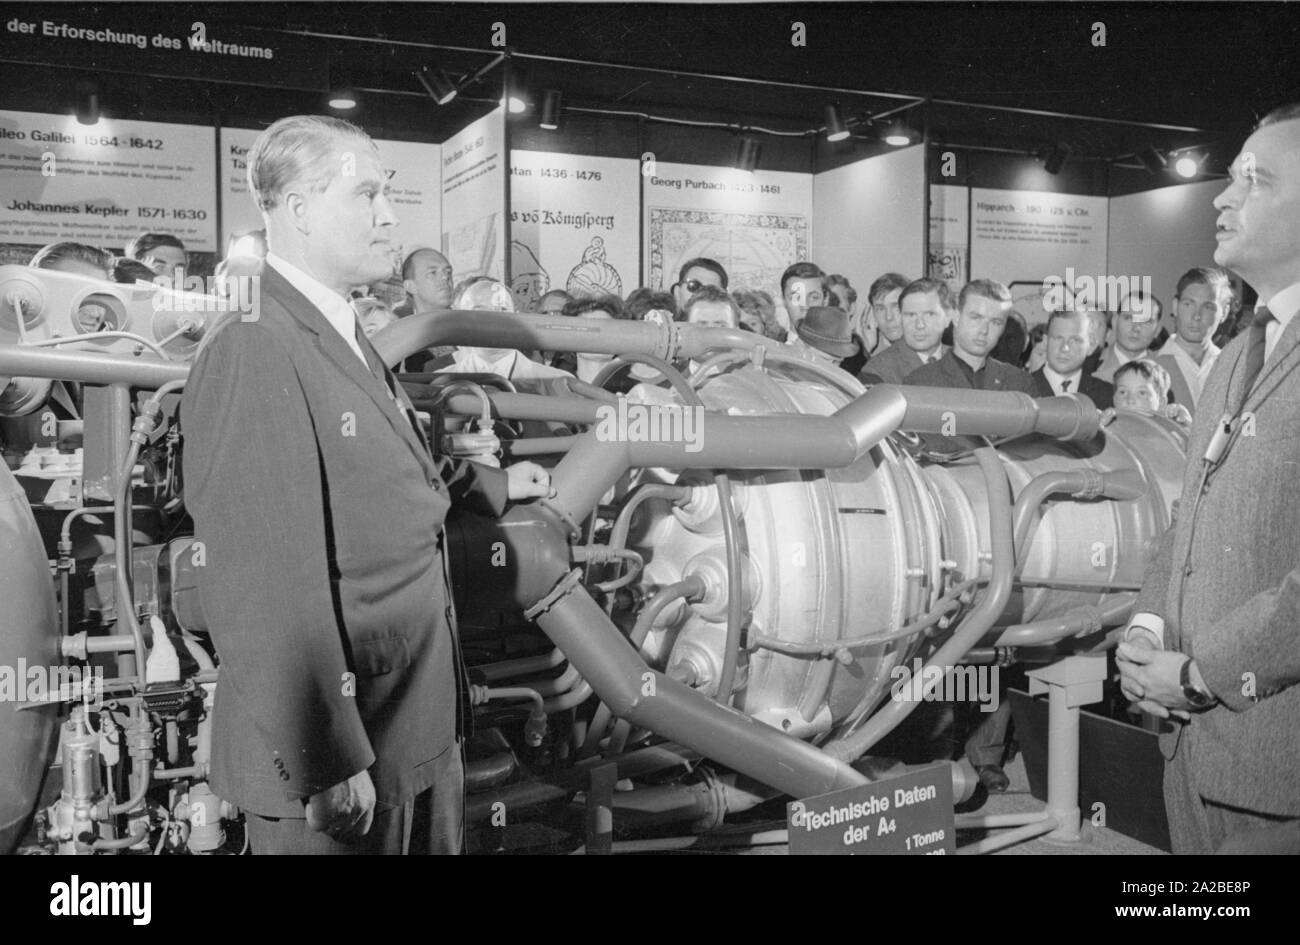 El ingeniero Wernher von Braun (l.) Visita la Exposición Internacional de Transporte (IVA) en el centro de exposiciones Theresienhöhe en Munich. Aquí él está delante de la Aggregat 4 (A4), el primer gran cohete, propulsado por un motor de cohete de propulsante líquido, que fue desarrollado bajo su liderazgo. Foto de stock